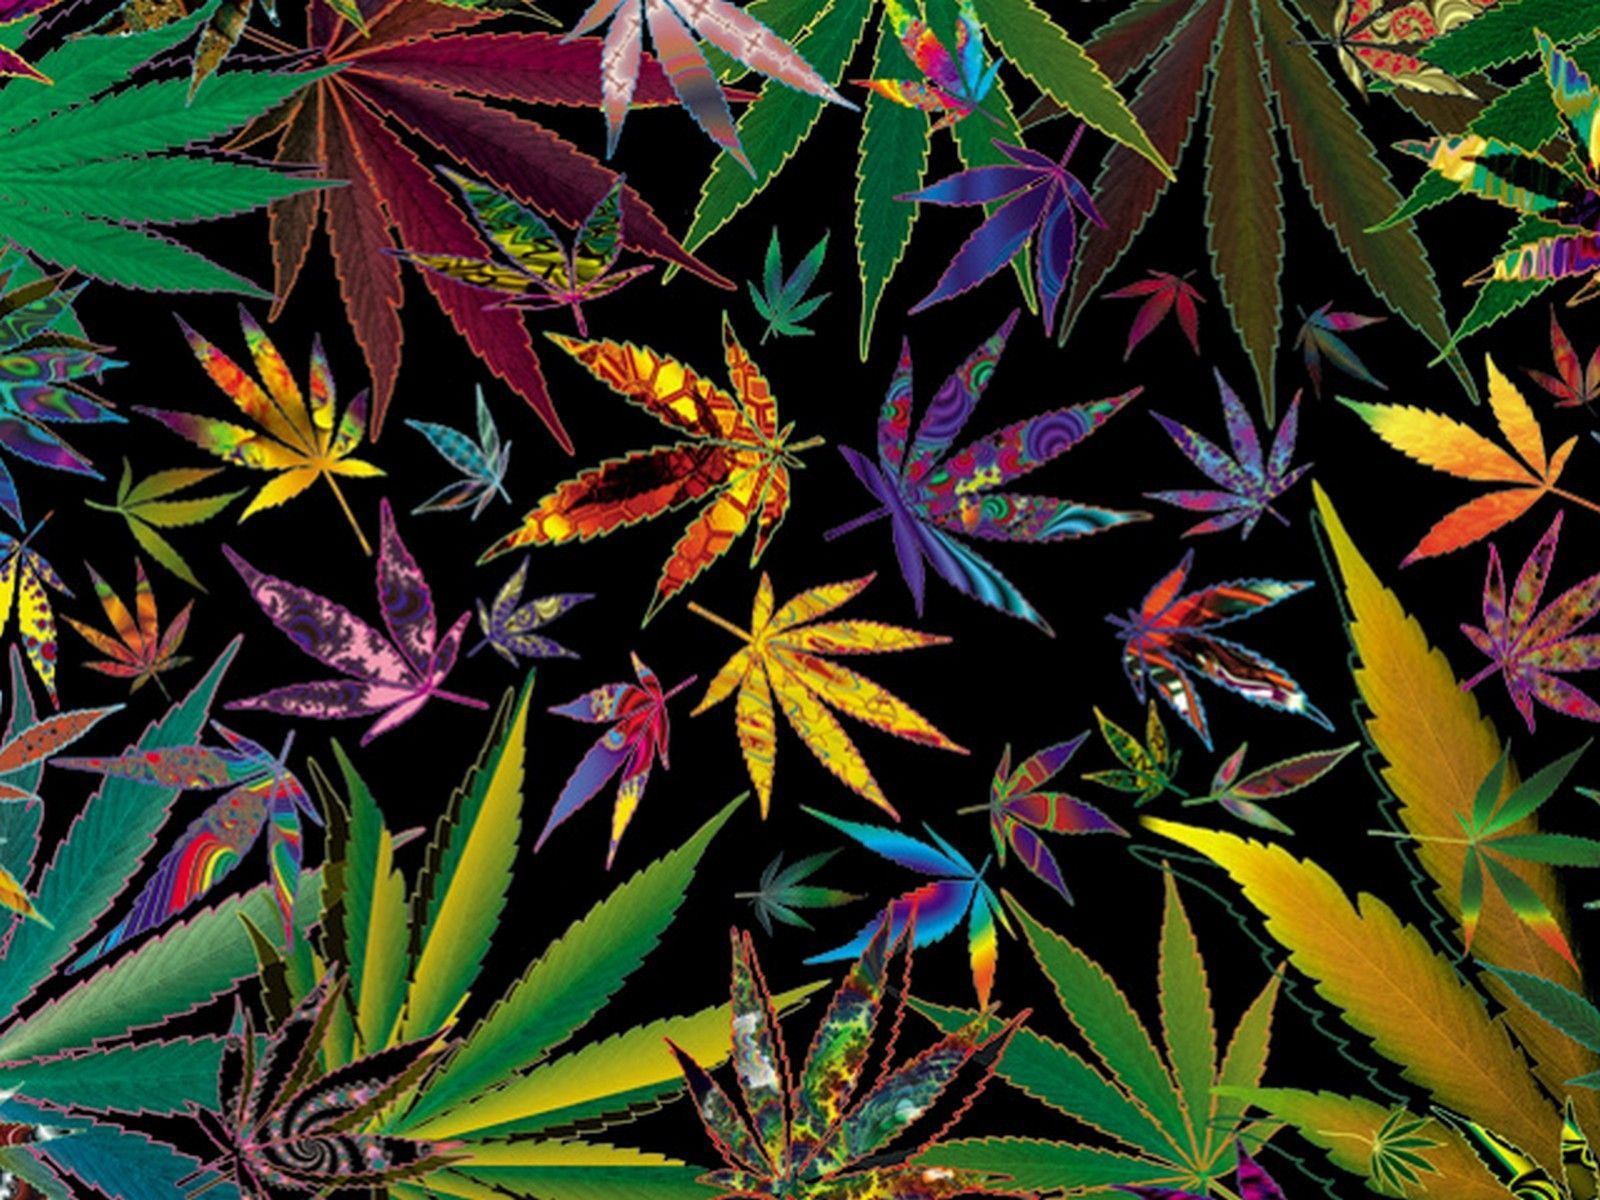 8. Trippy Marijuana Nail Art - wide 6